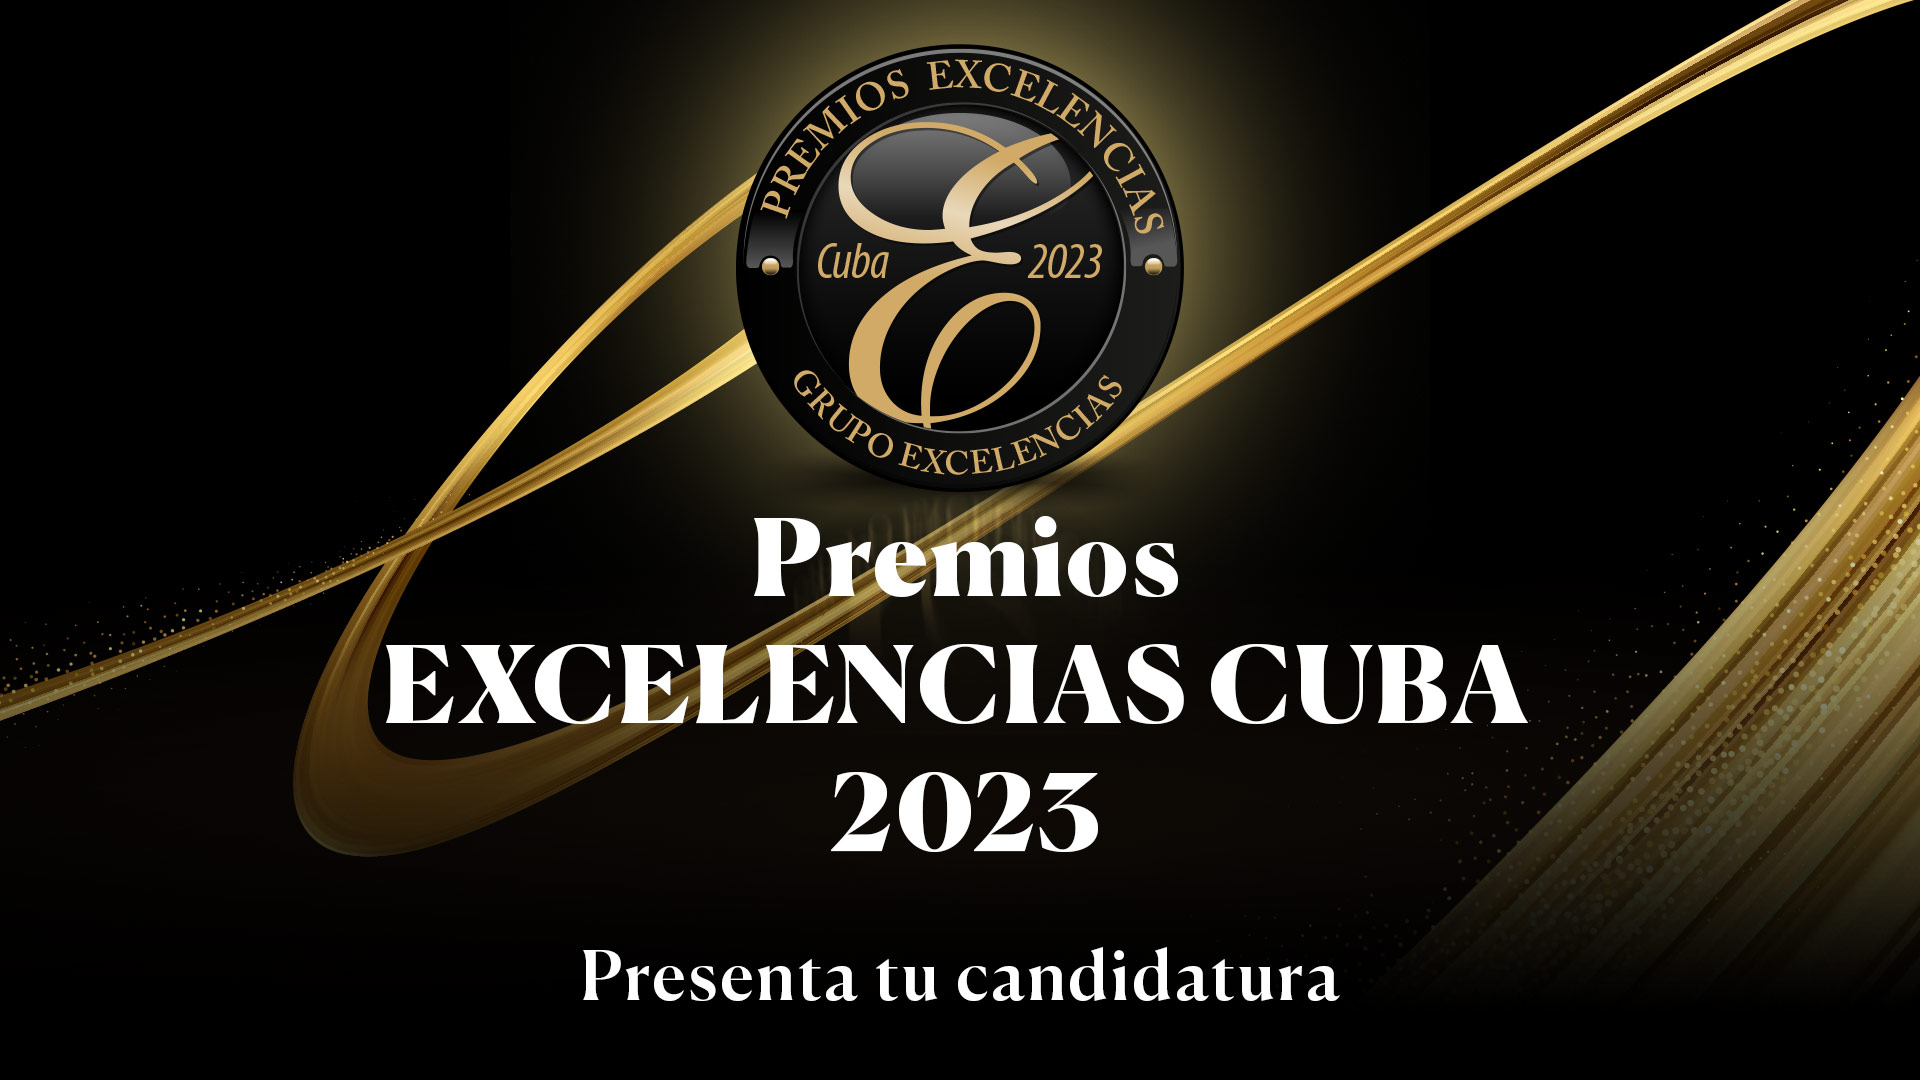 Premios Excelencias Cuba 2023: ¡Aún estás a tiempo para presentarte! 